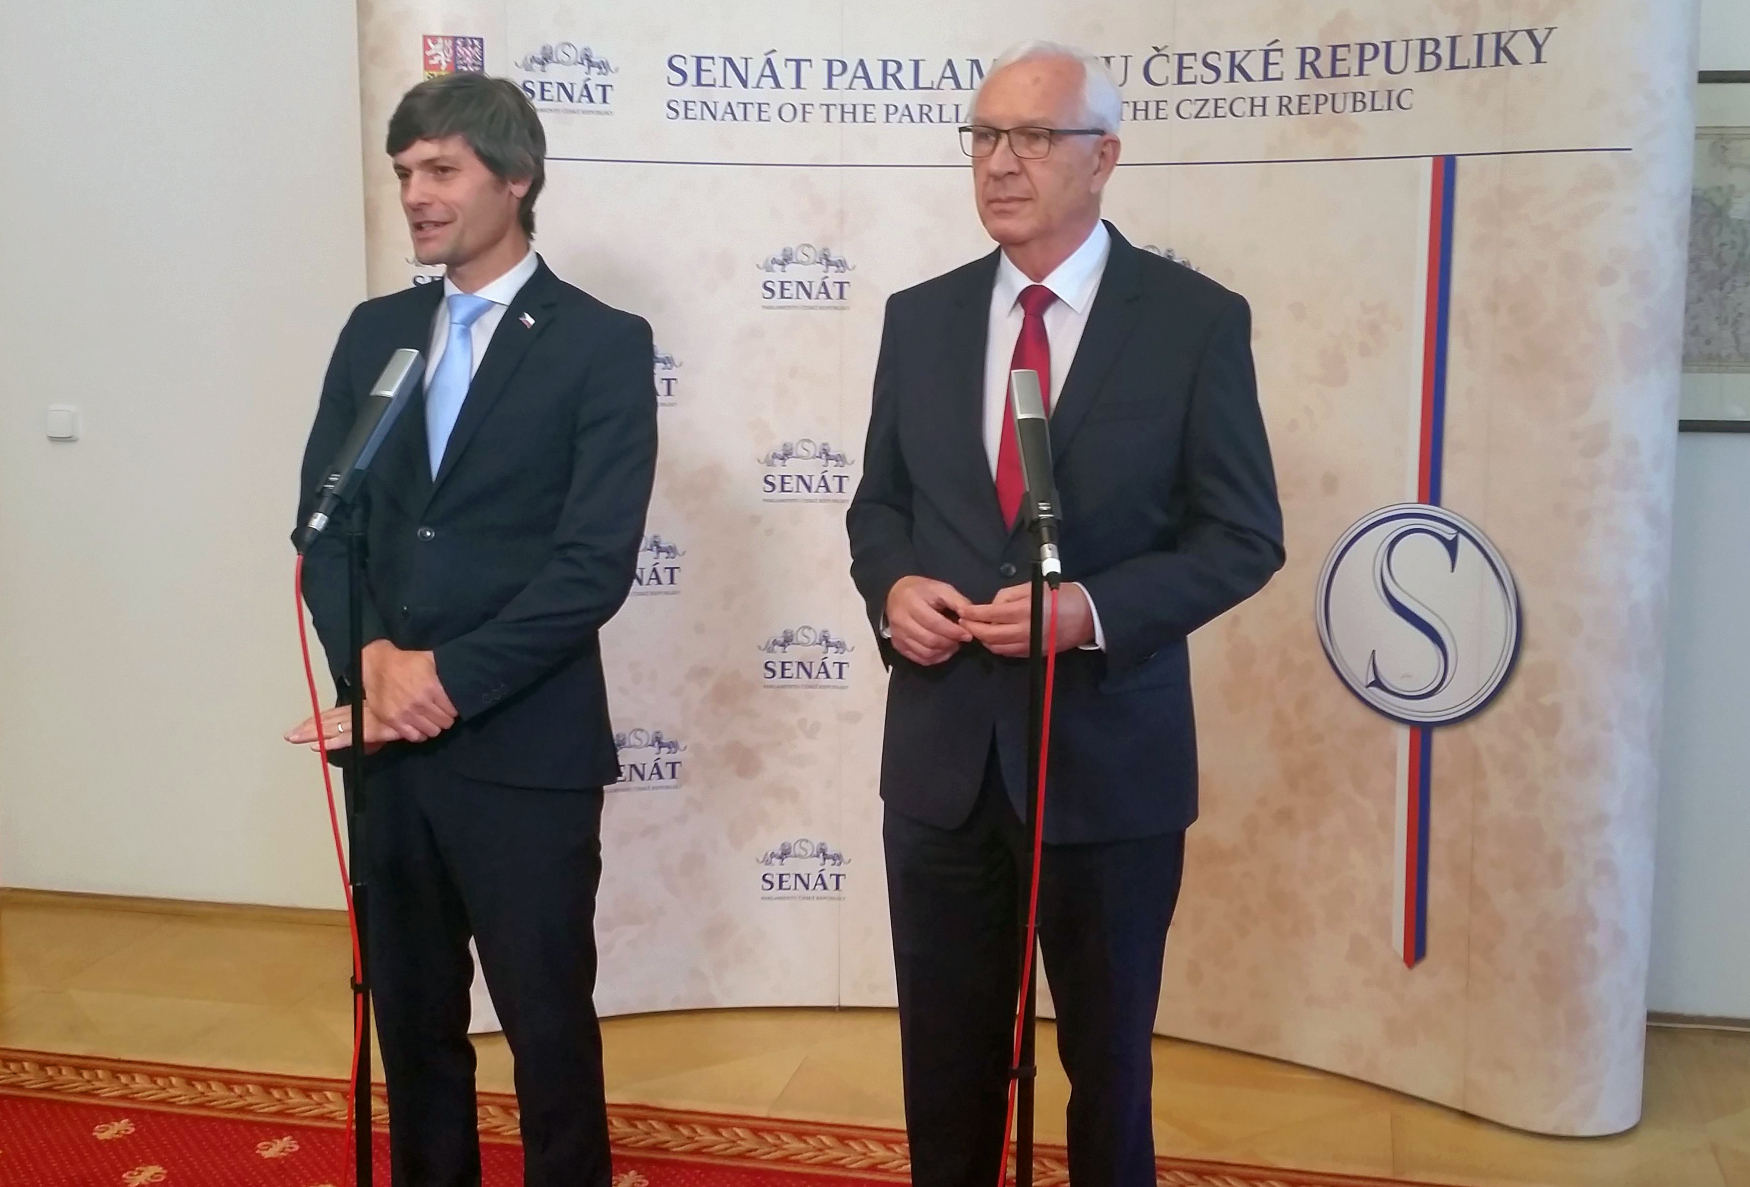 Bývalí prezidentští kandidáti Jiří Drahoš (vpravo) a Marek Hilšer (vlevo) oznámili na společné tiskové konferenci, že posílí v Senátu klub Starostové a nezávislí